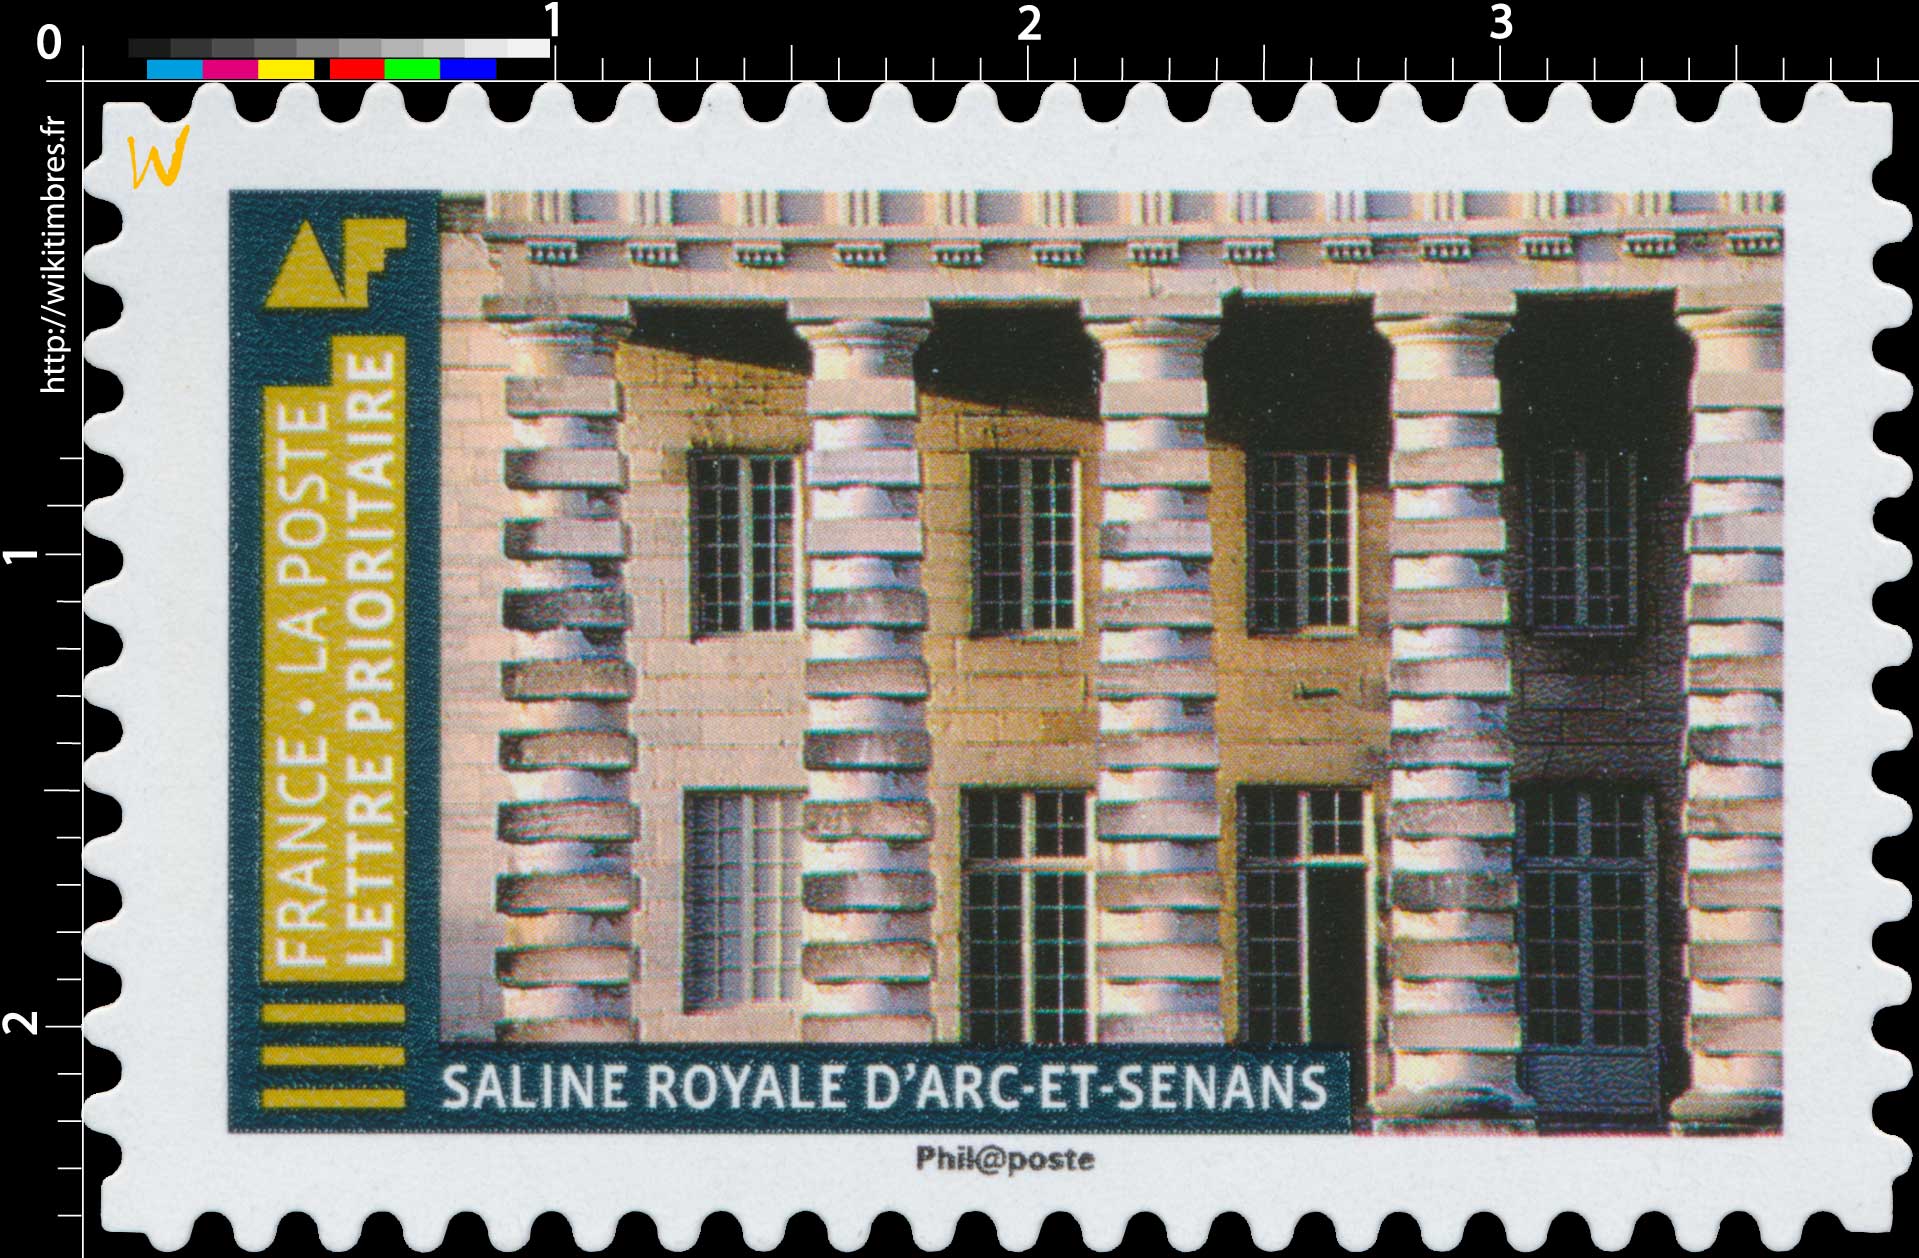 2019 Saline royale d'Arc-et-Senans